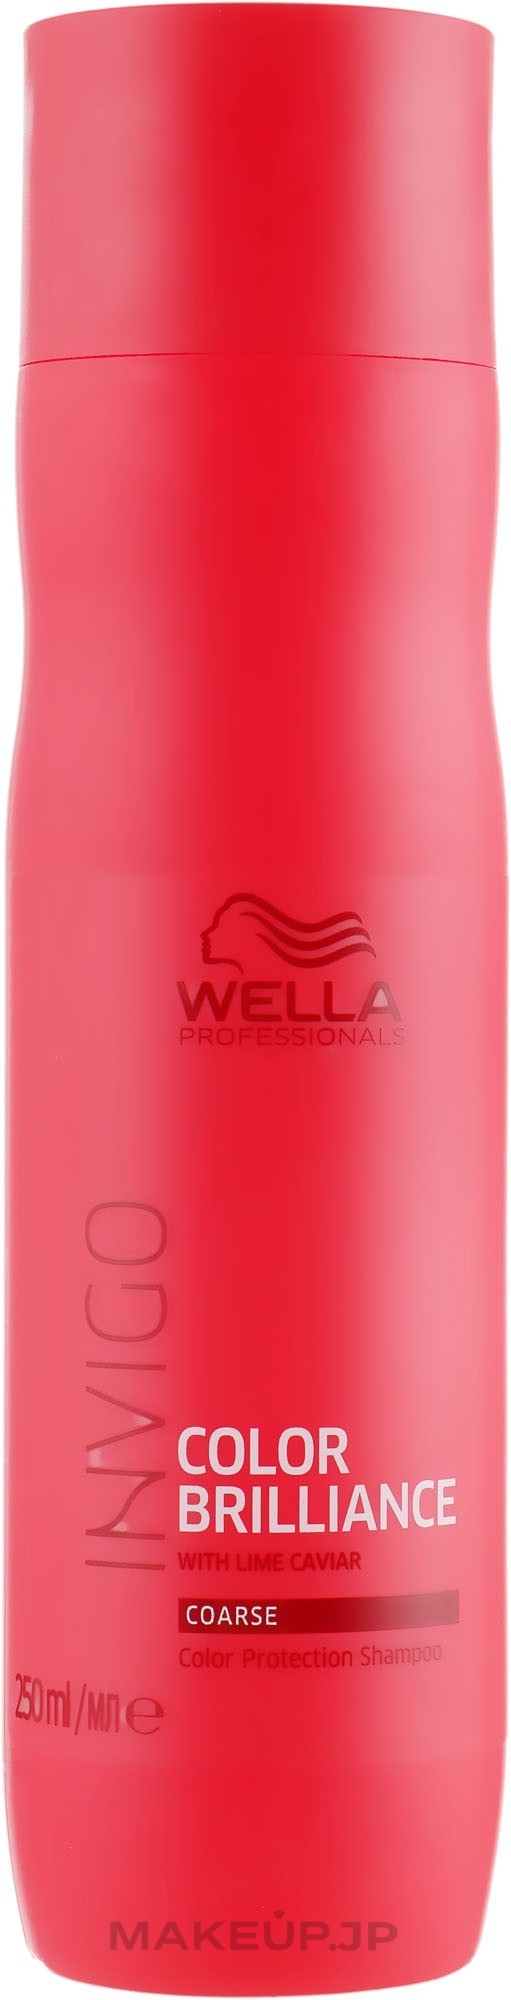 Color Protection Shampoo for Colored & Coarse Hair - Wella Professionals Invigo Brilliance Coarse Hair Shampoo — photo 250 ml